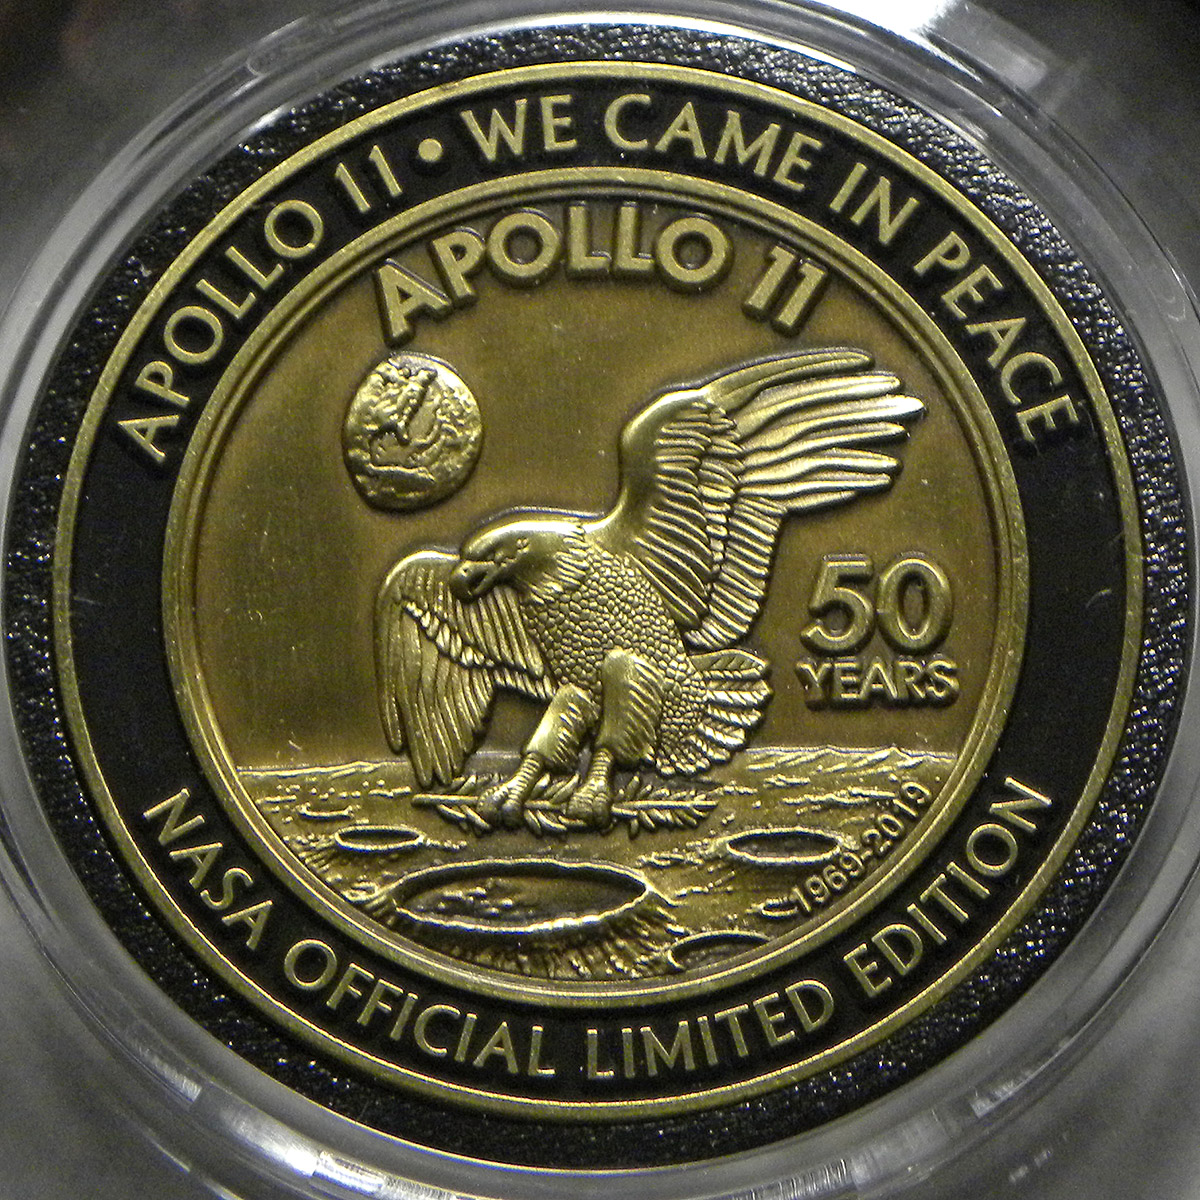 Project Apollo 50th anniversary medal: Apollo 11